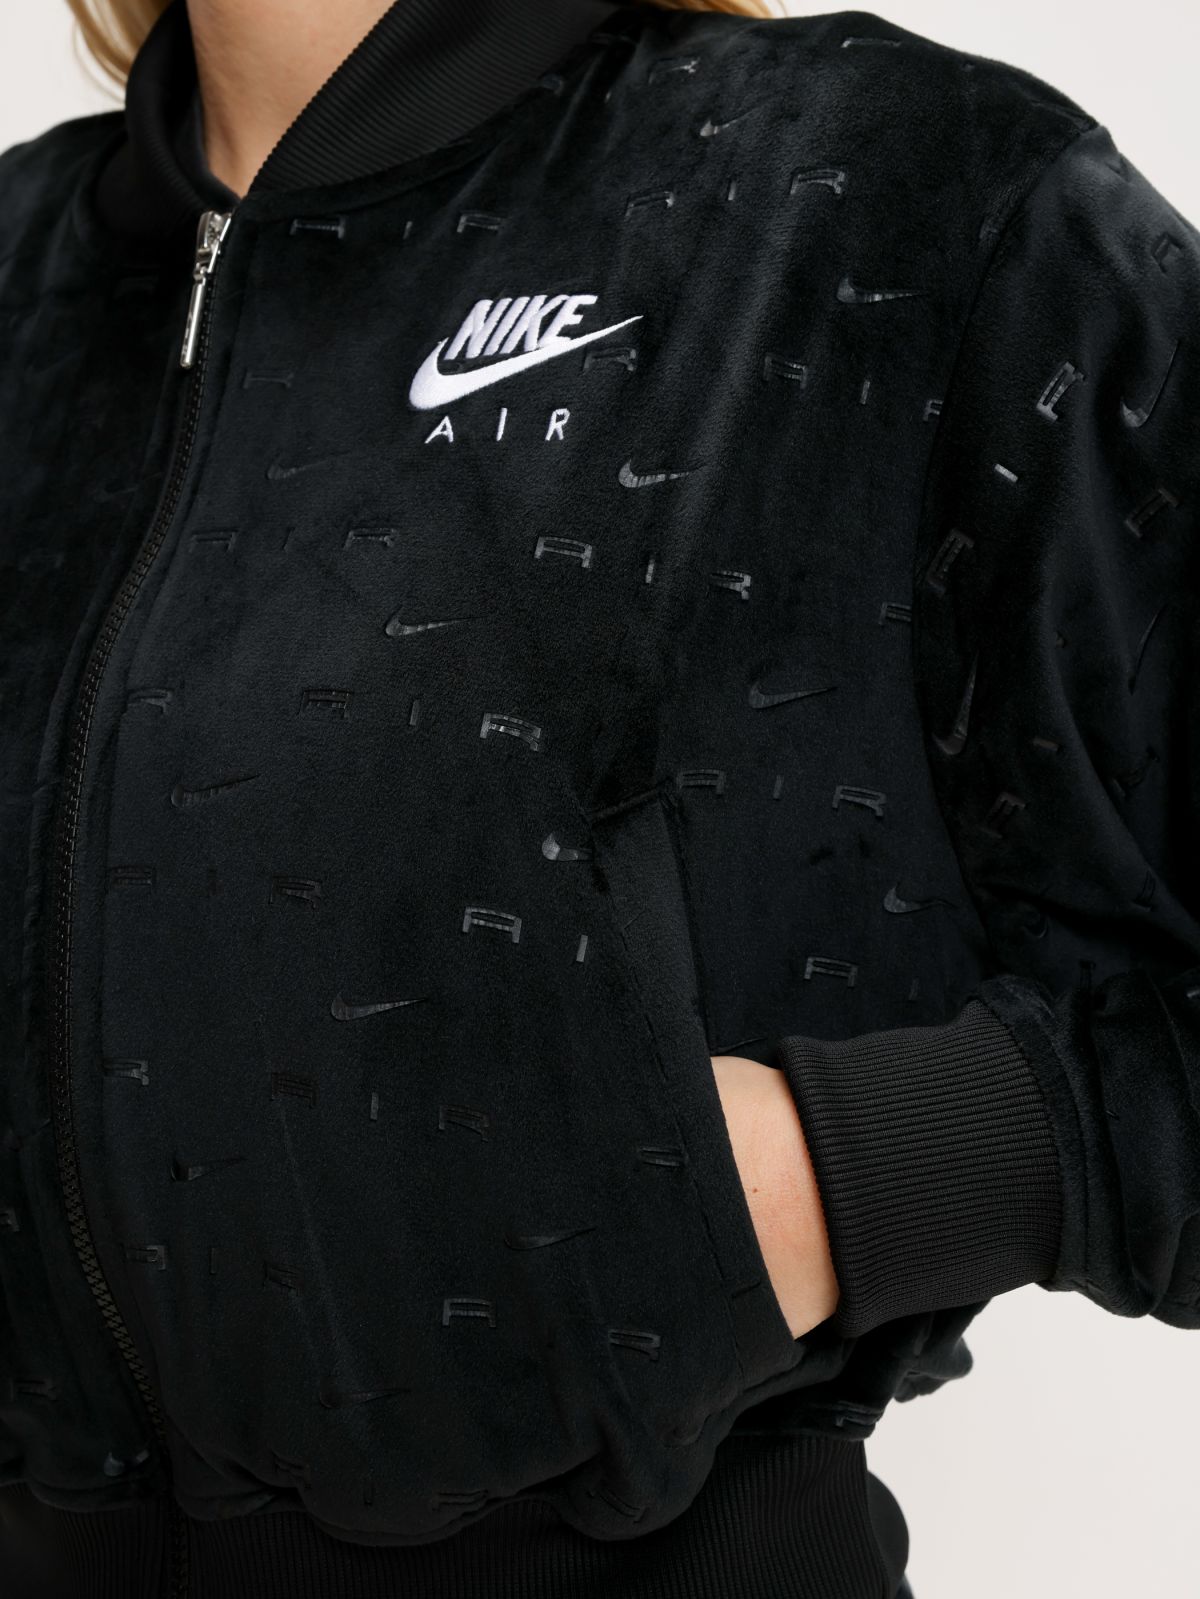  ג'קט קטיפה בהדפס לוגו Nike Air של NIKE